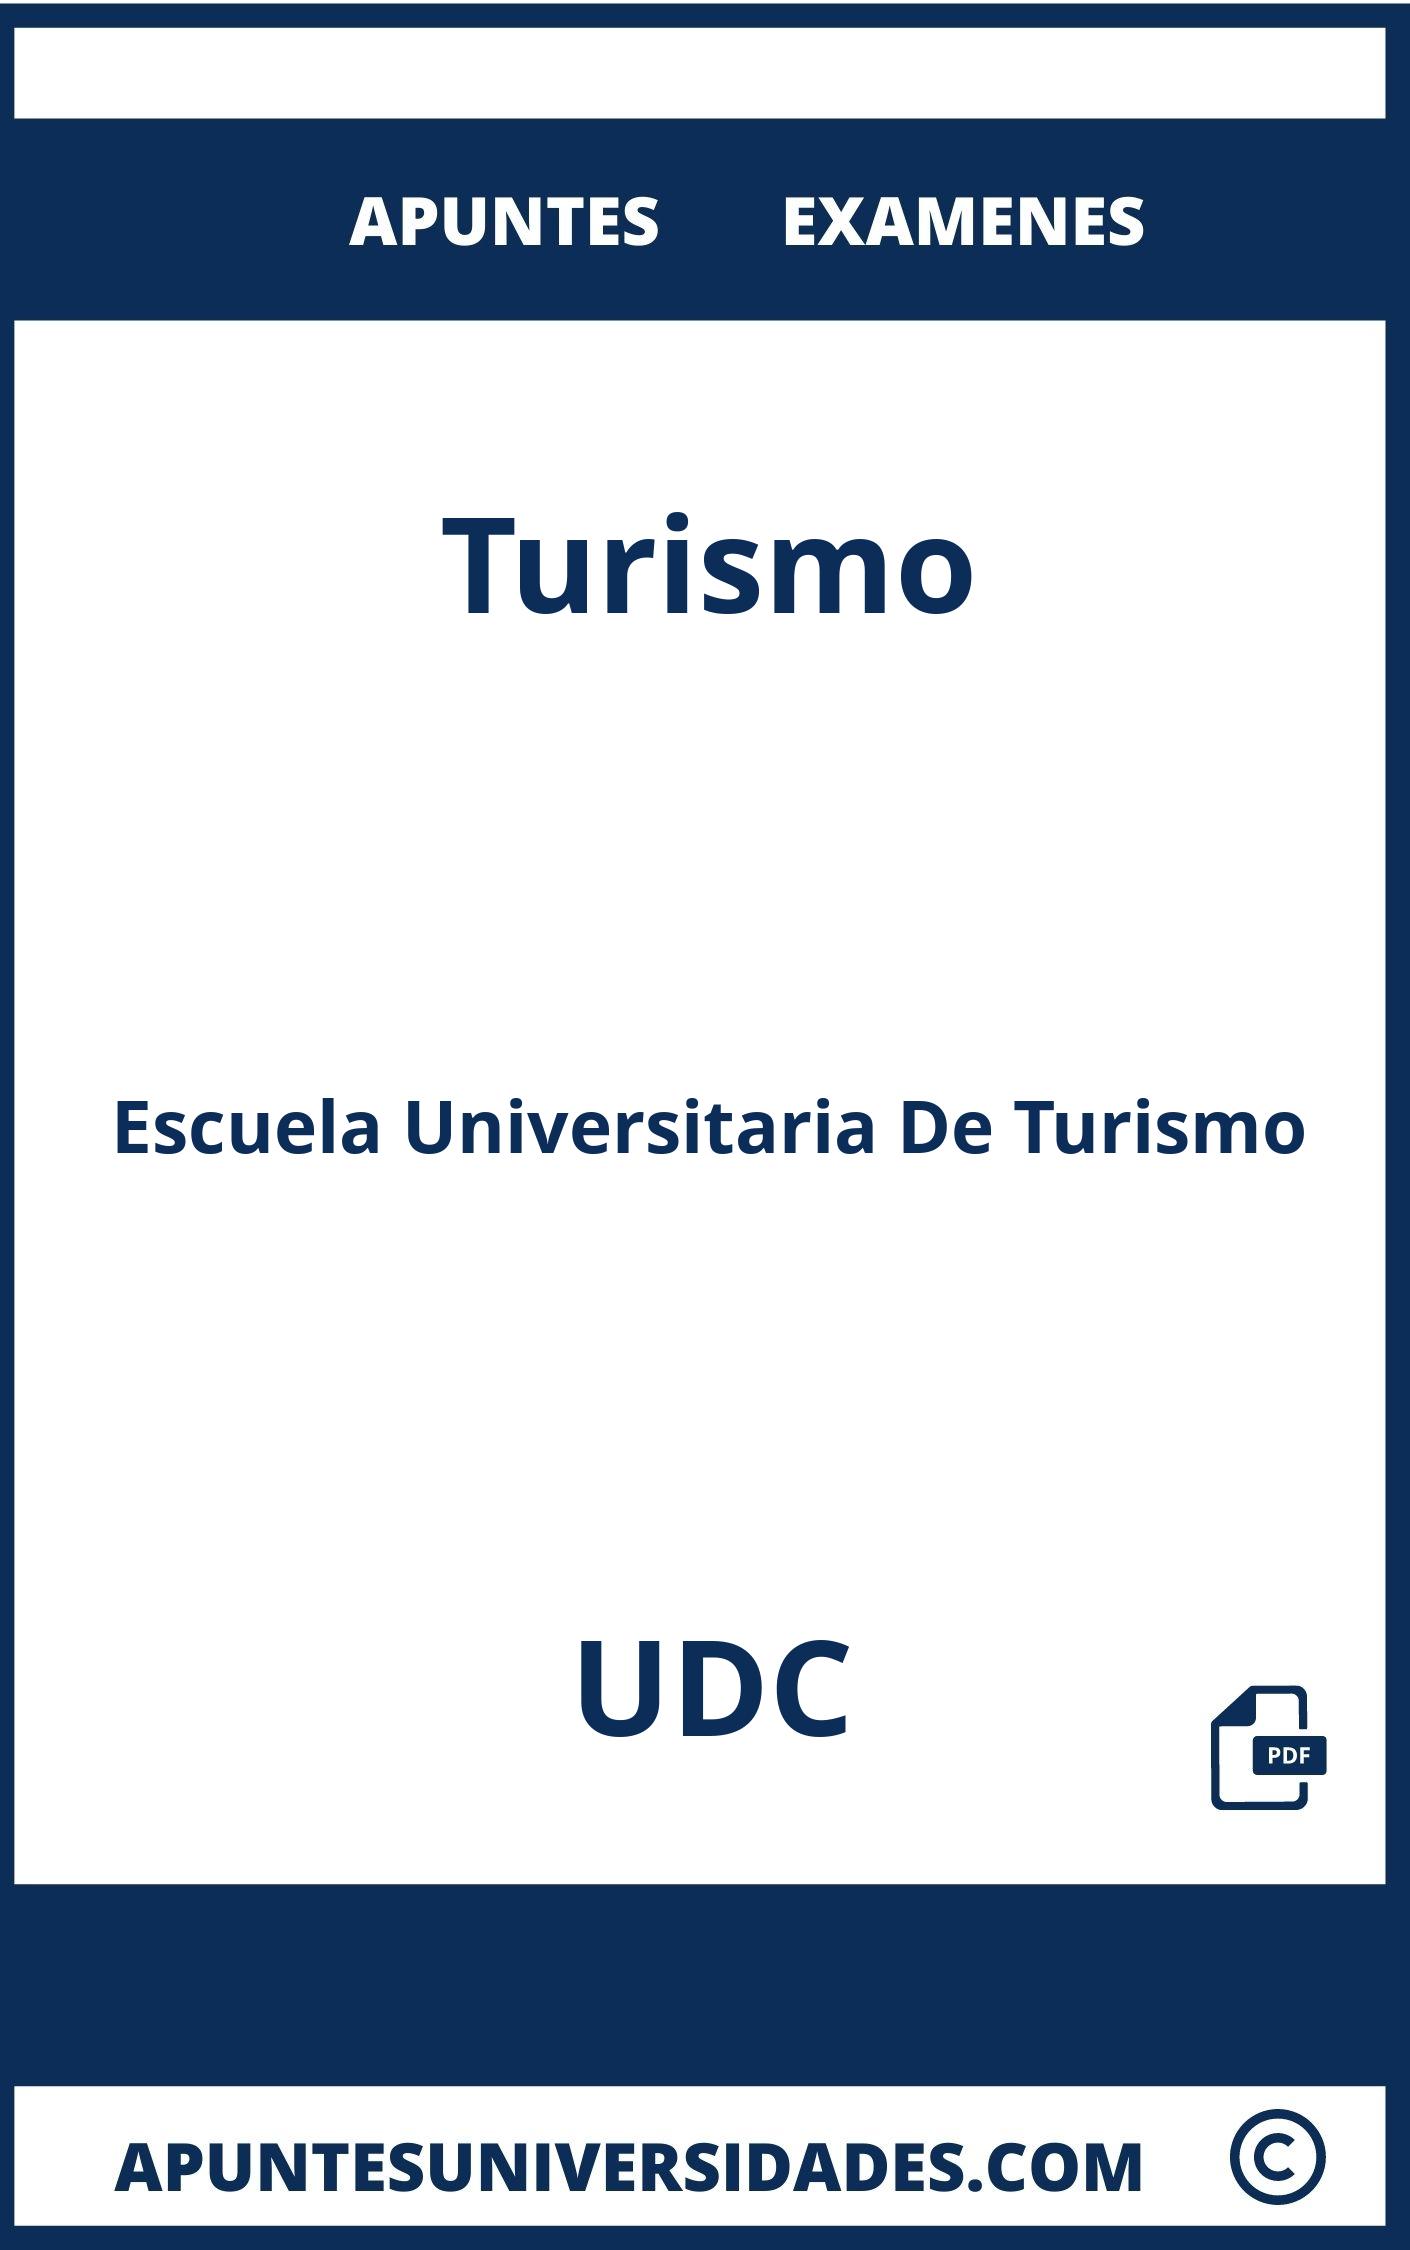 Apuntes y Examenes de Turismo UDC